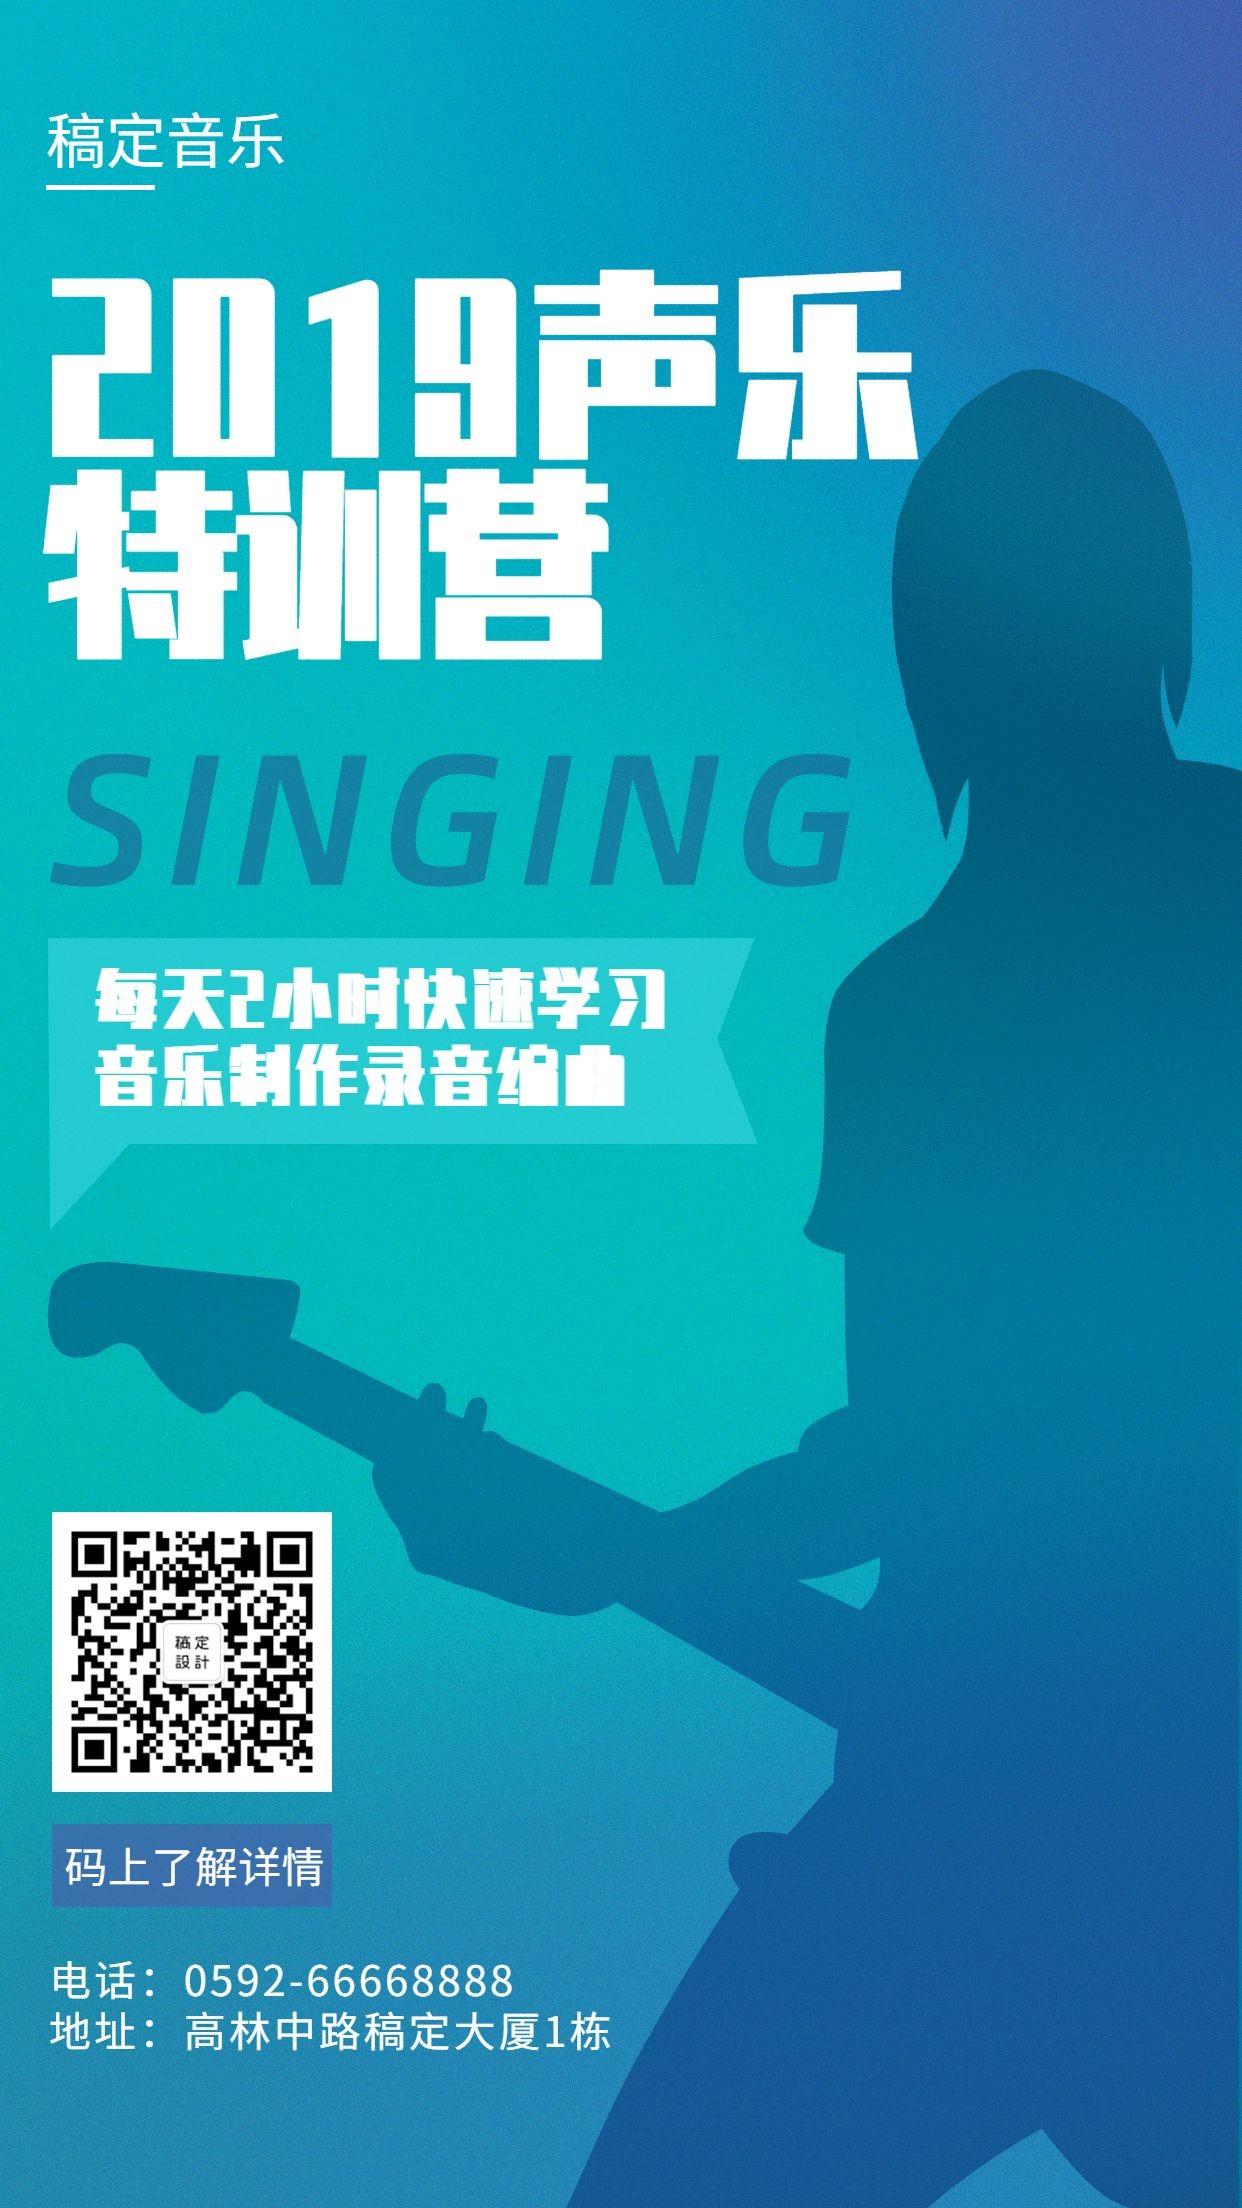 声乐培训创意简约项目介绍手机海报